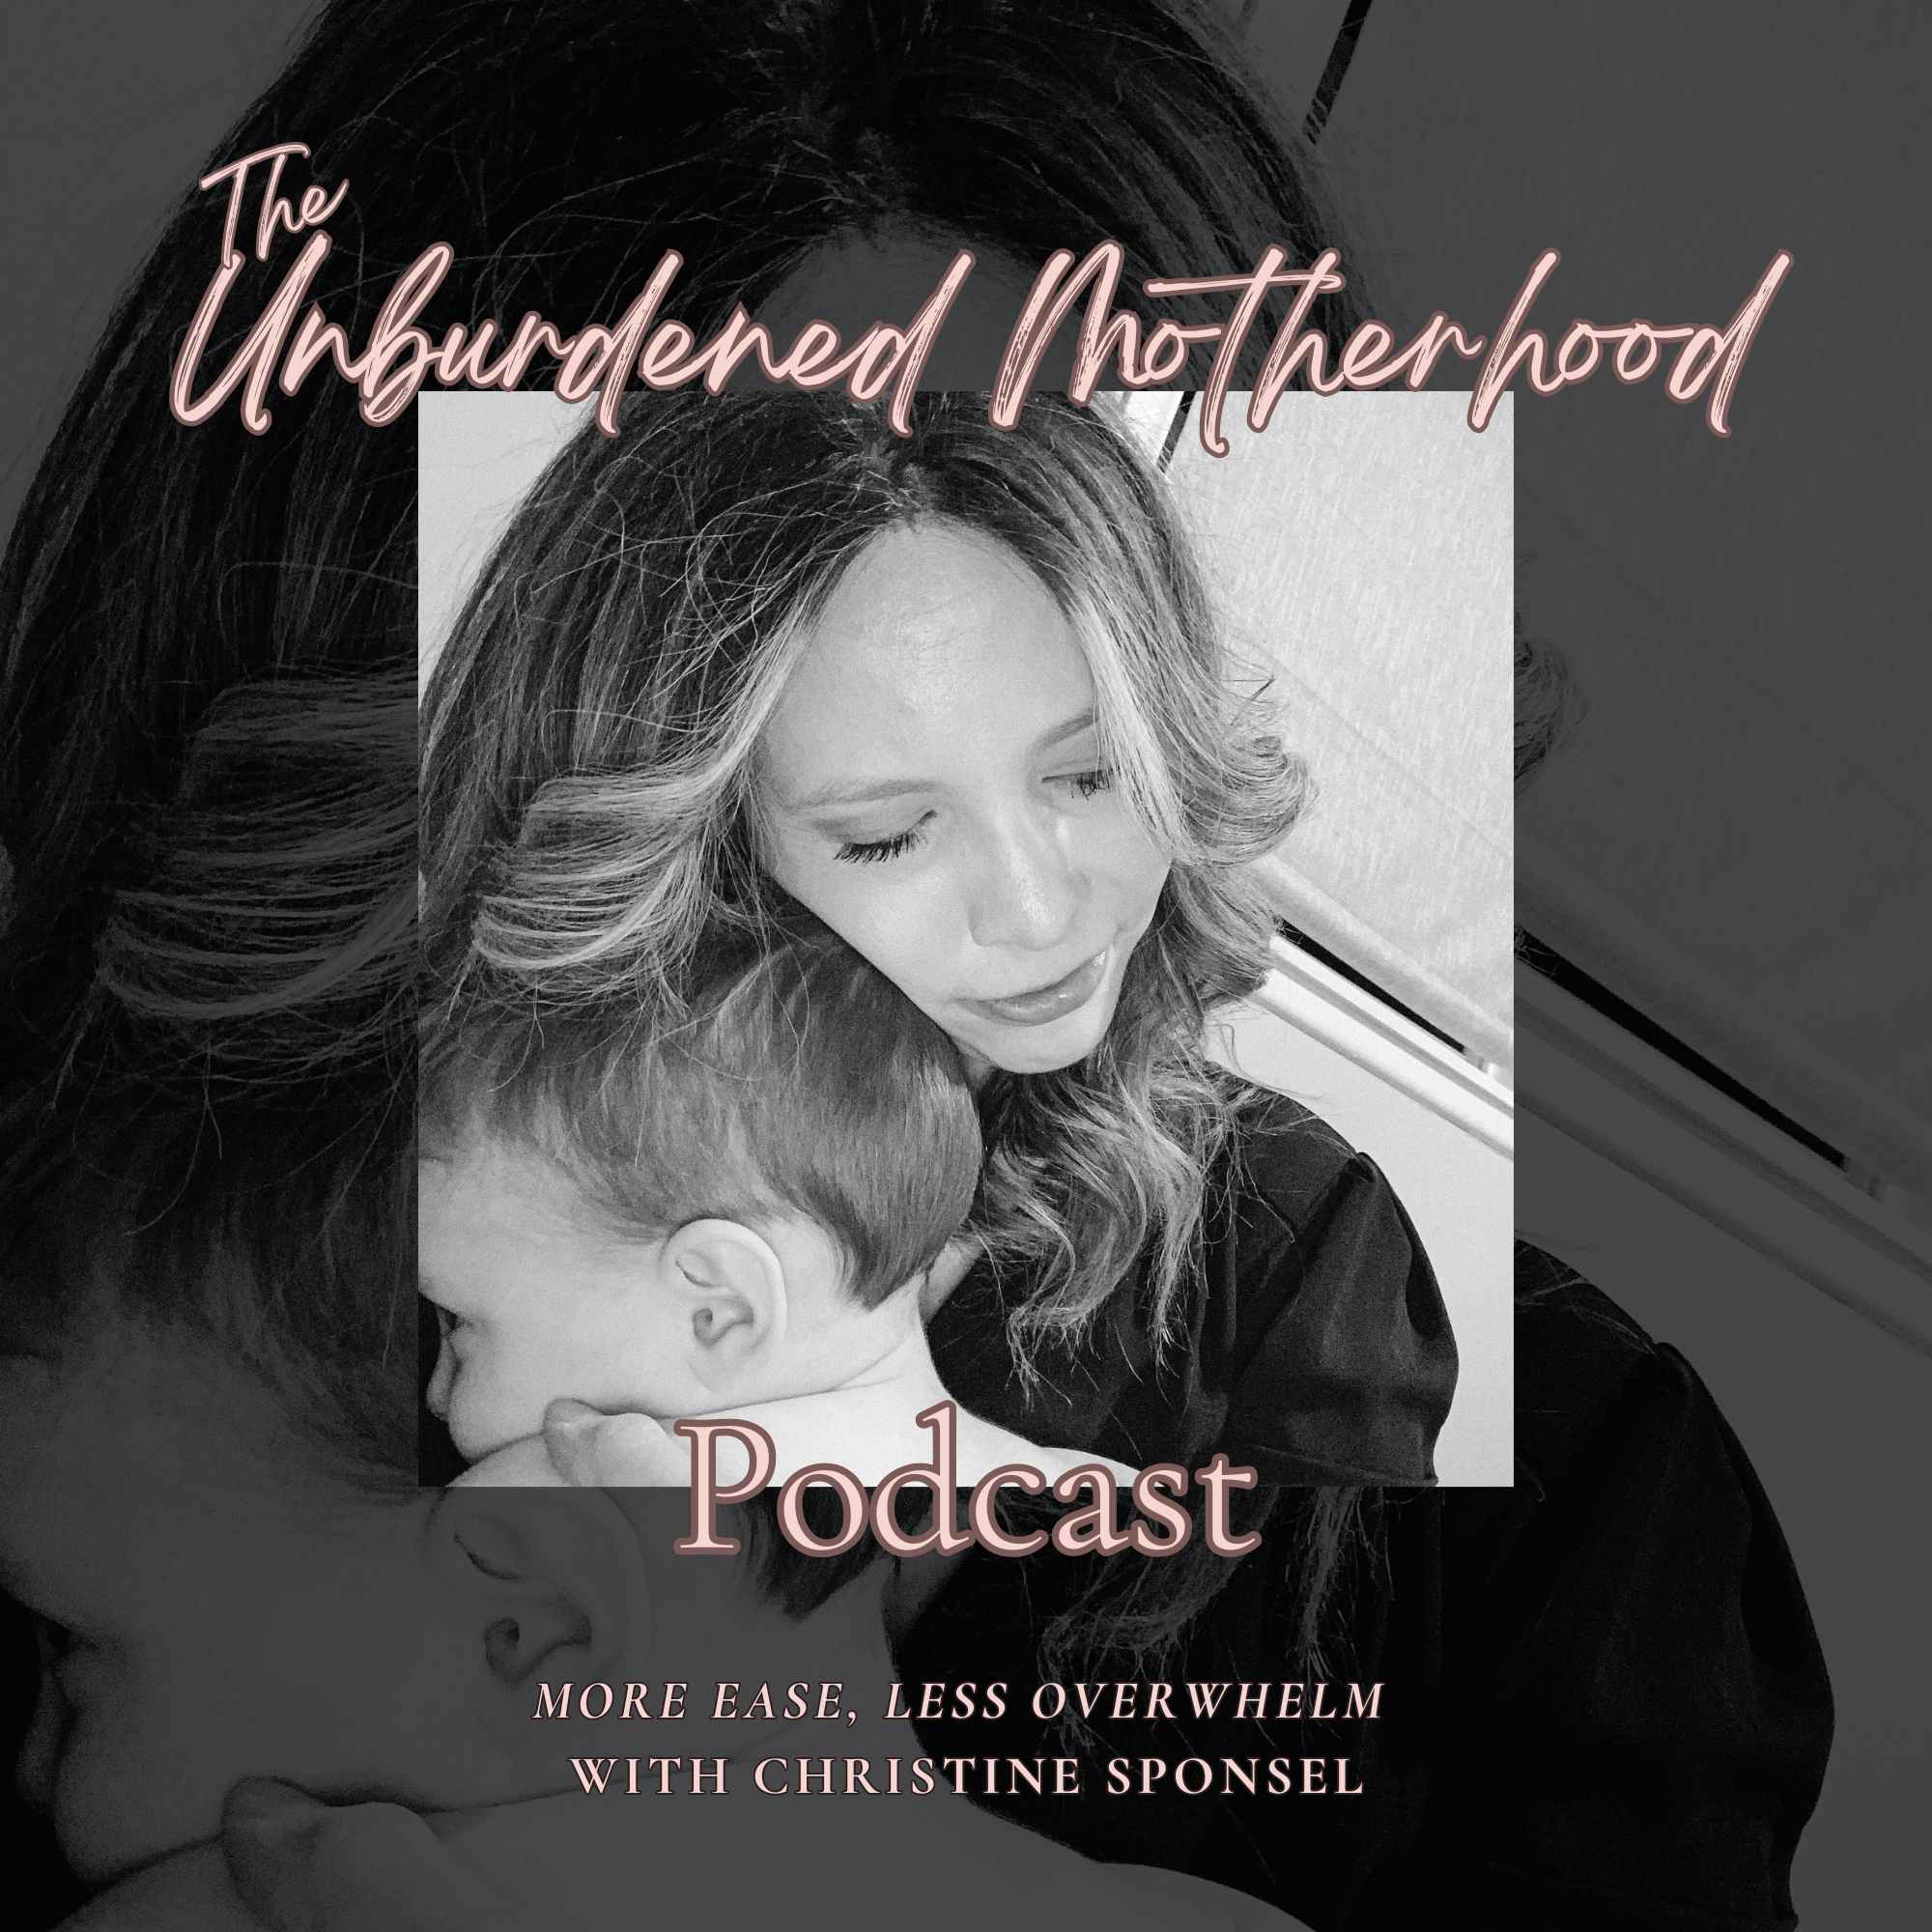 Artwork for The Unburdened Motherhood Podcast